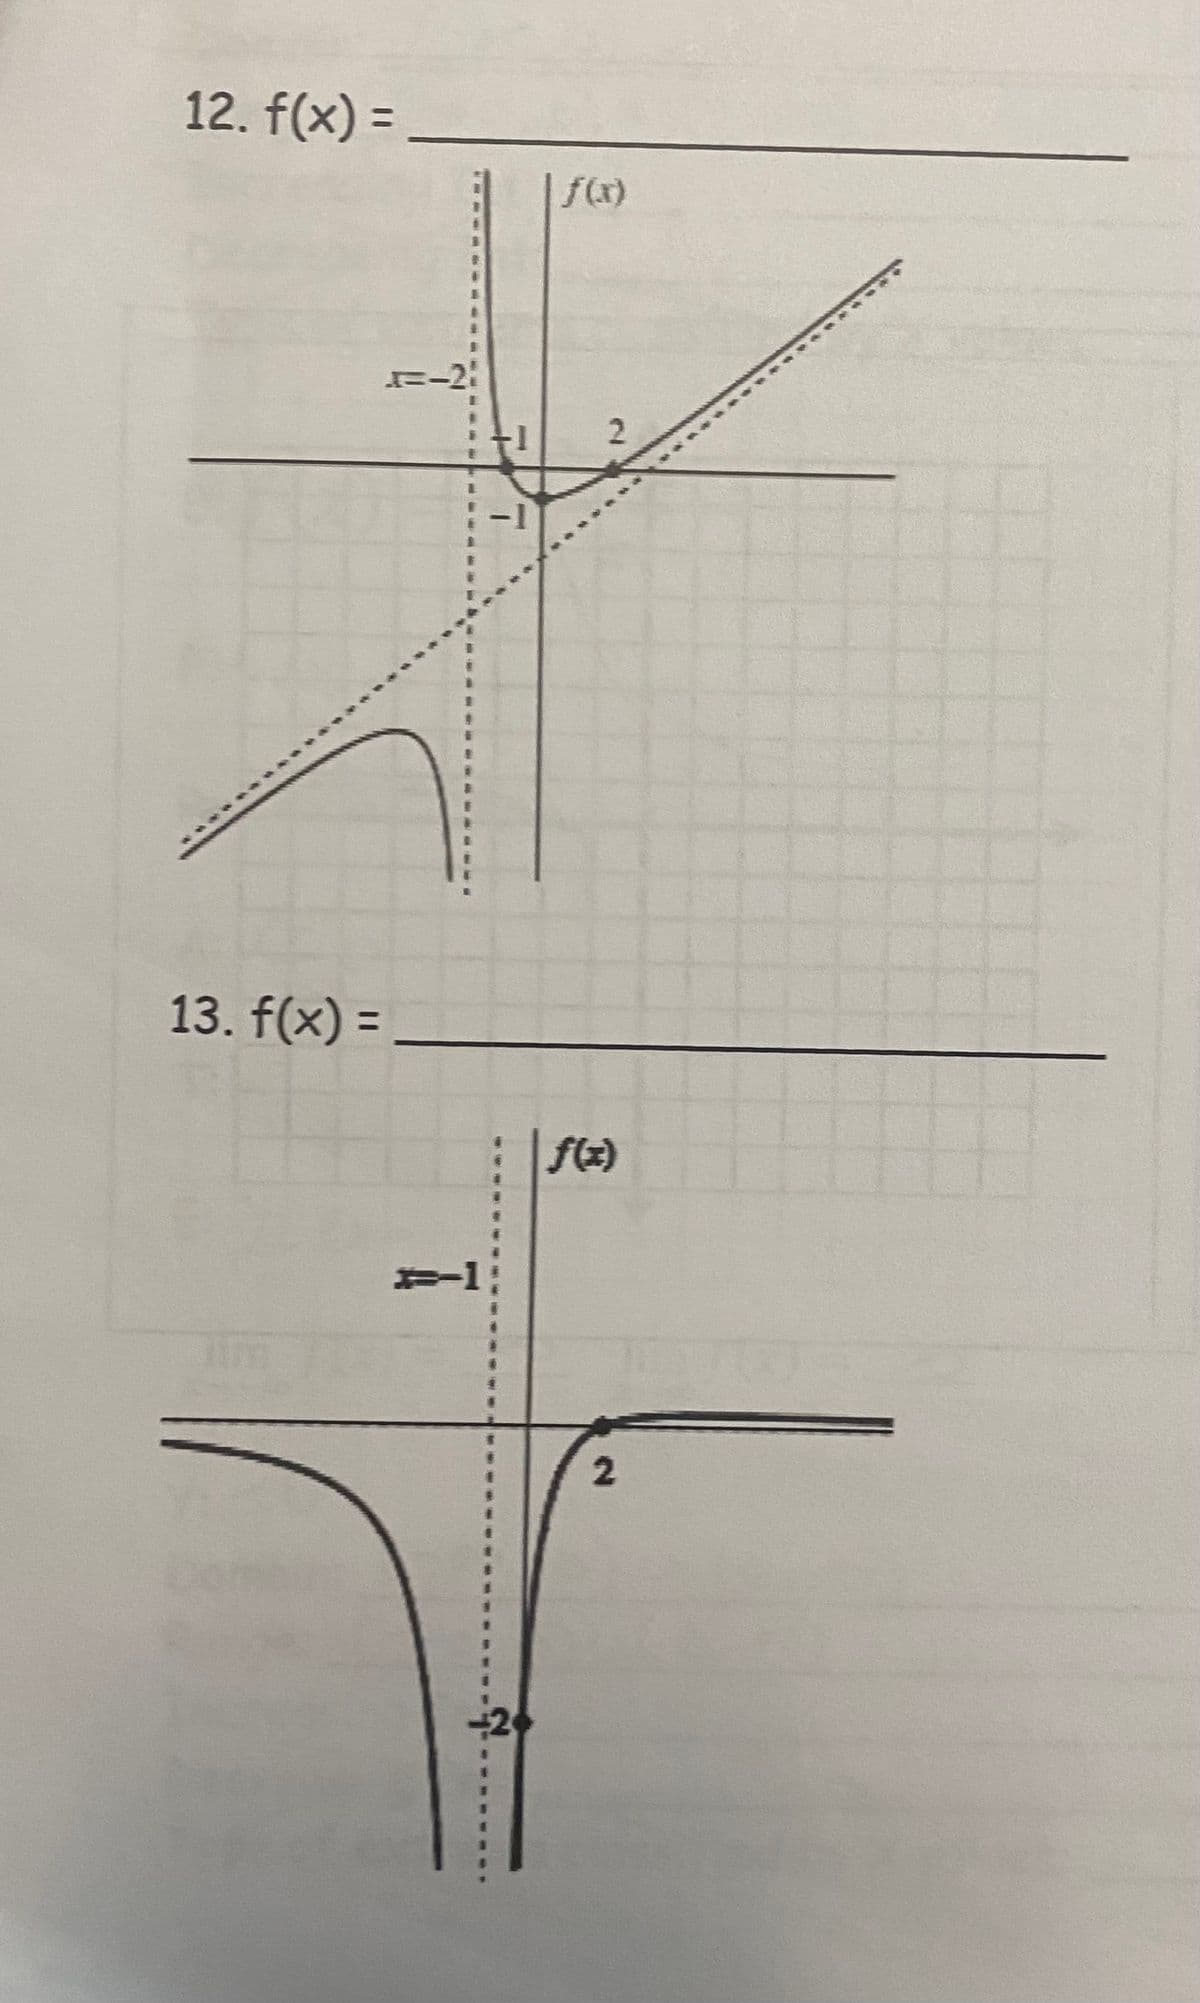 12. f(x) = _
13. f(x) =
=-2
#1
2
f(x)
2